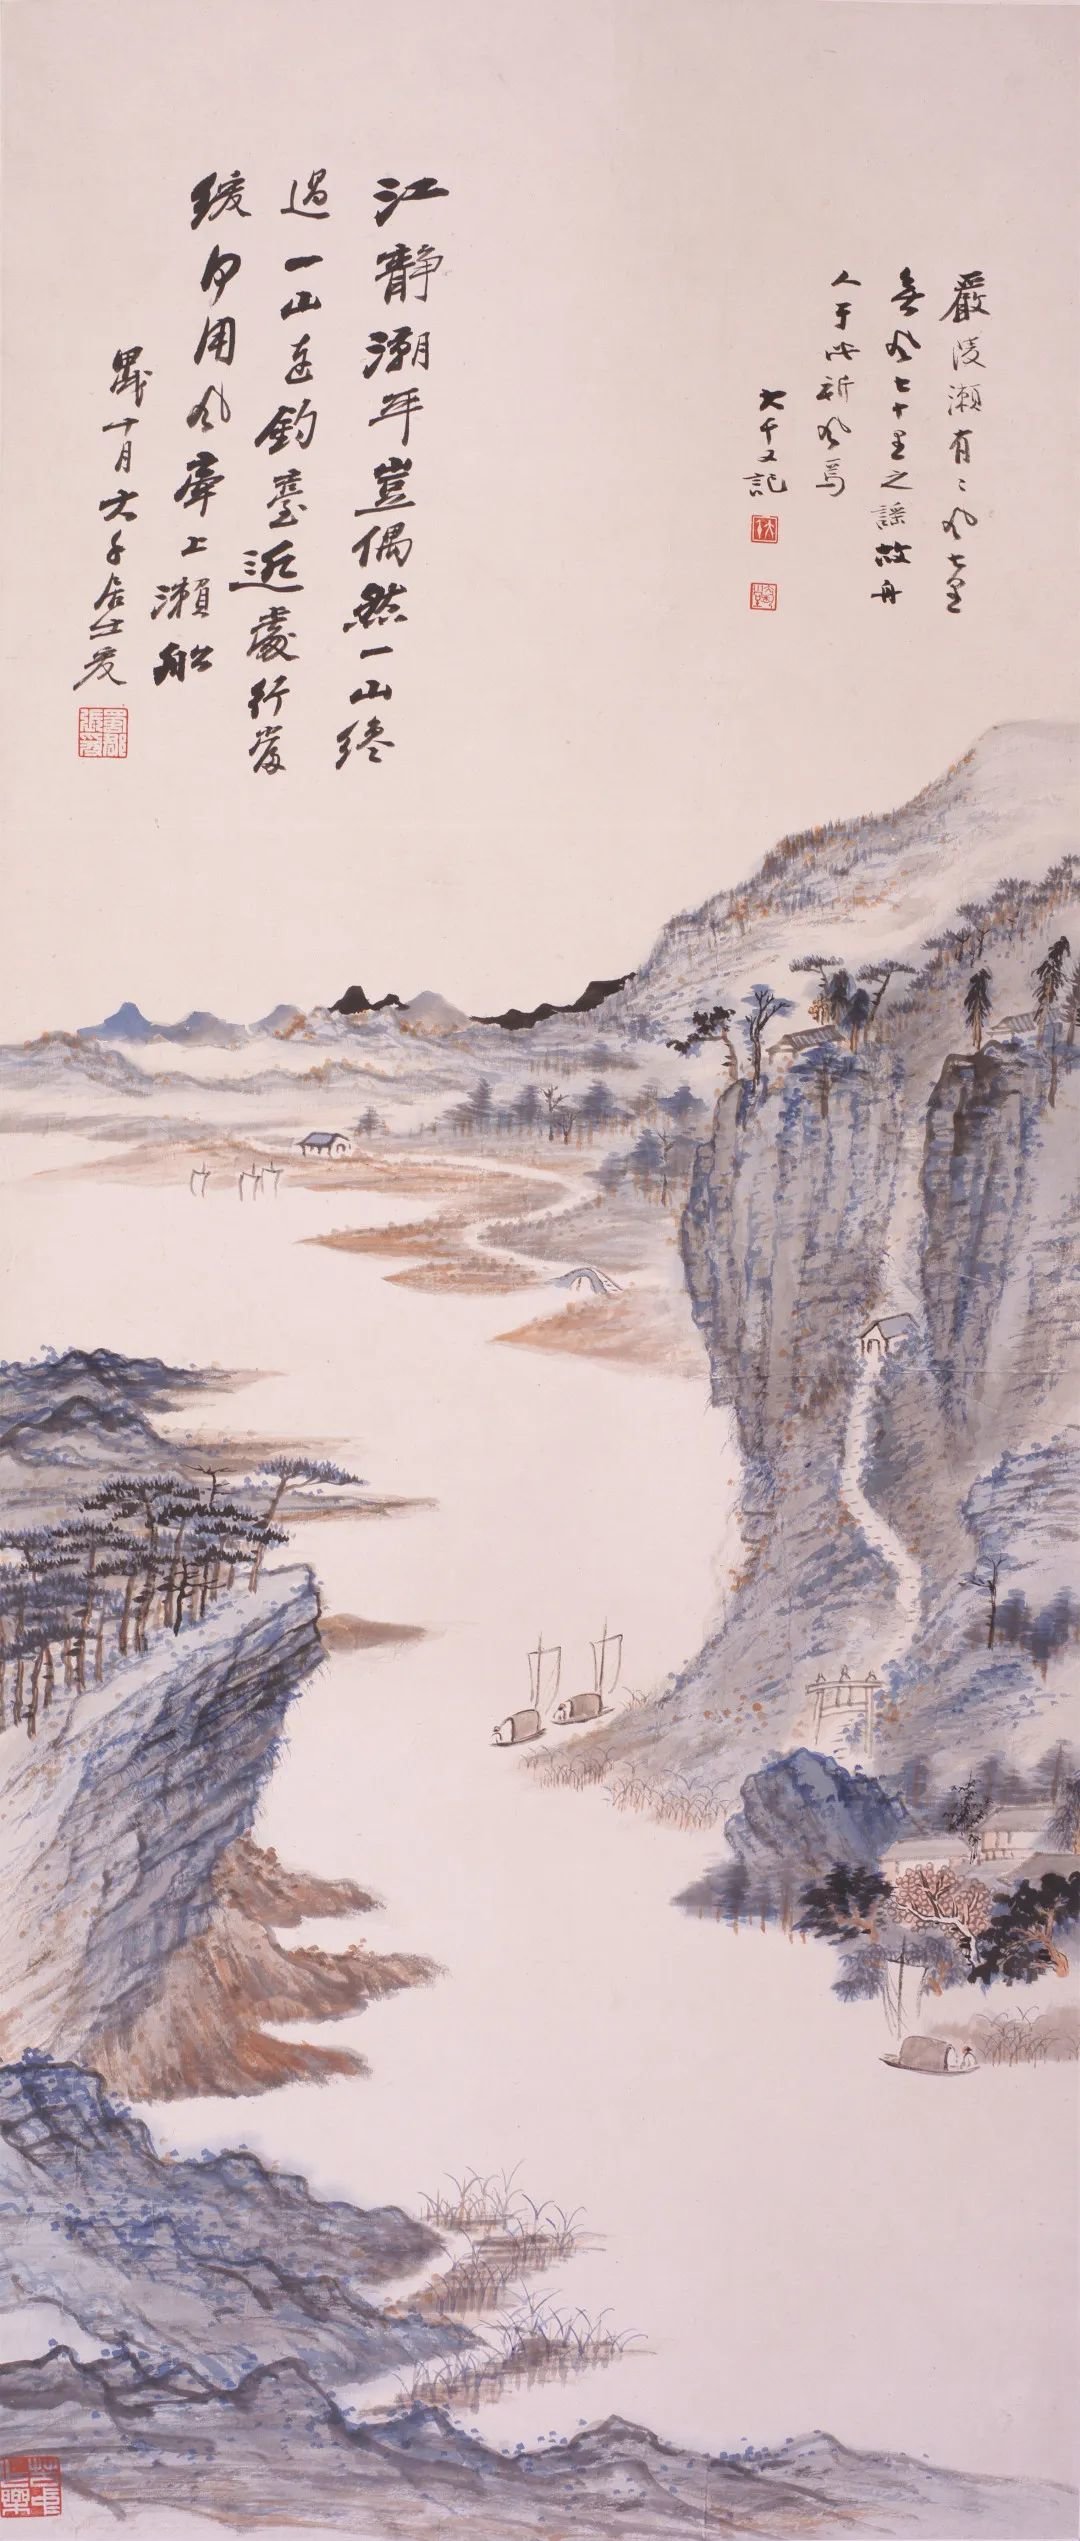 张大千 《严陵秋色图》 1934年